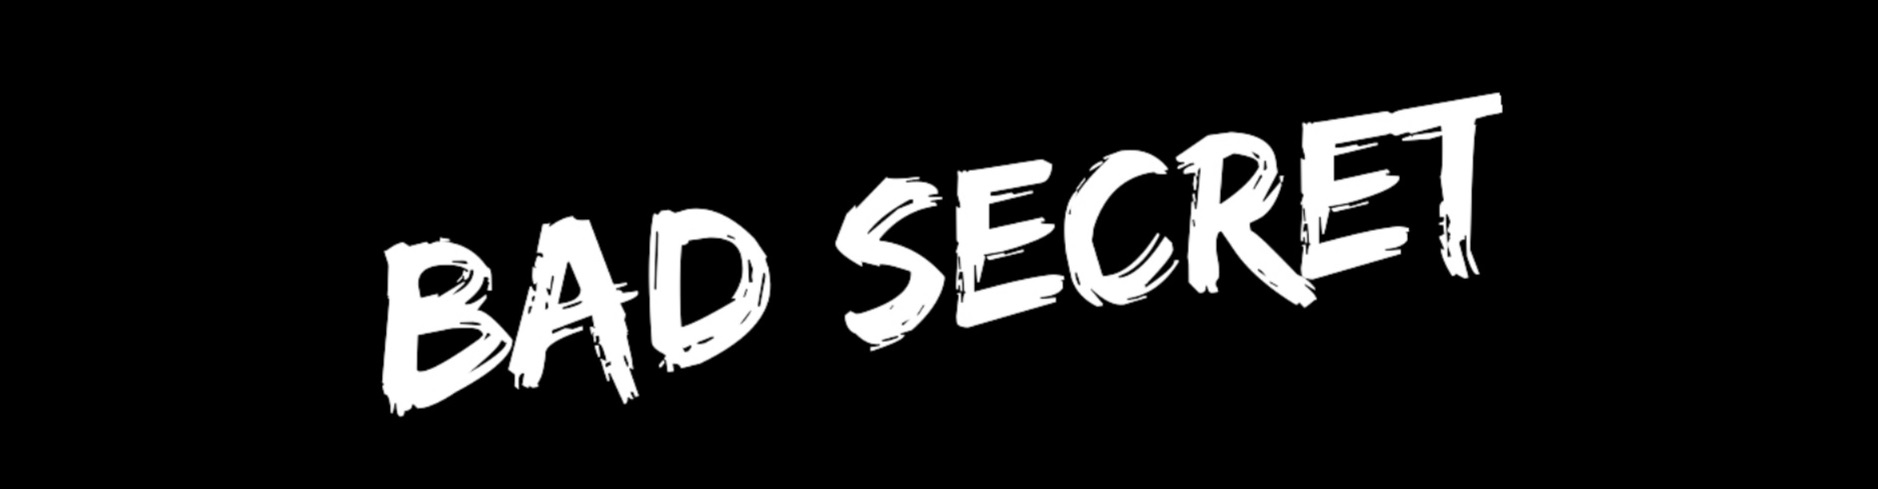 Bad Secret  [Full]